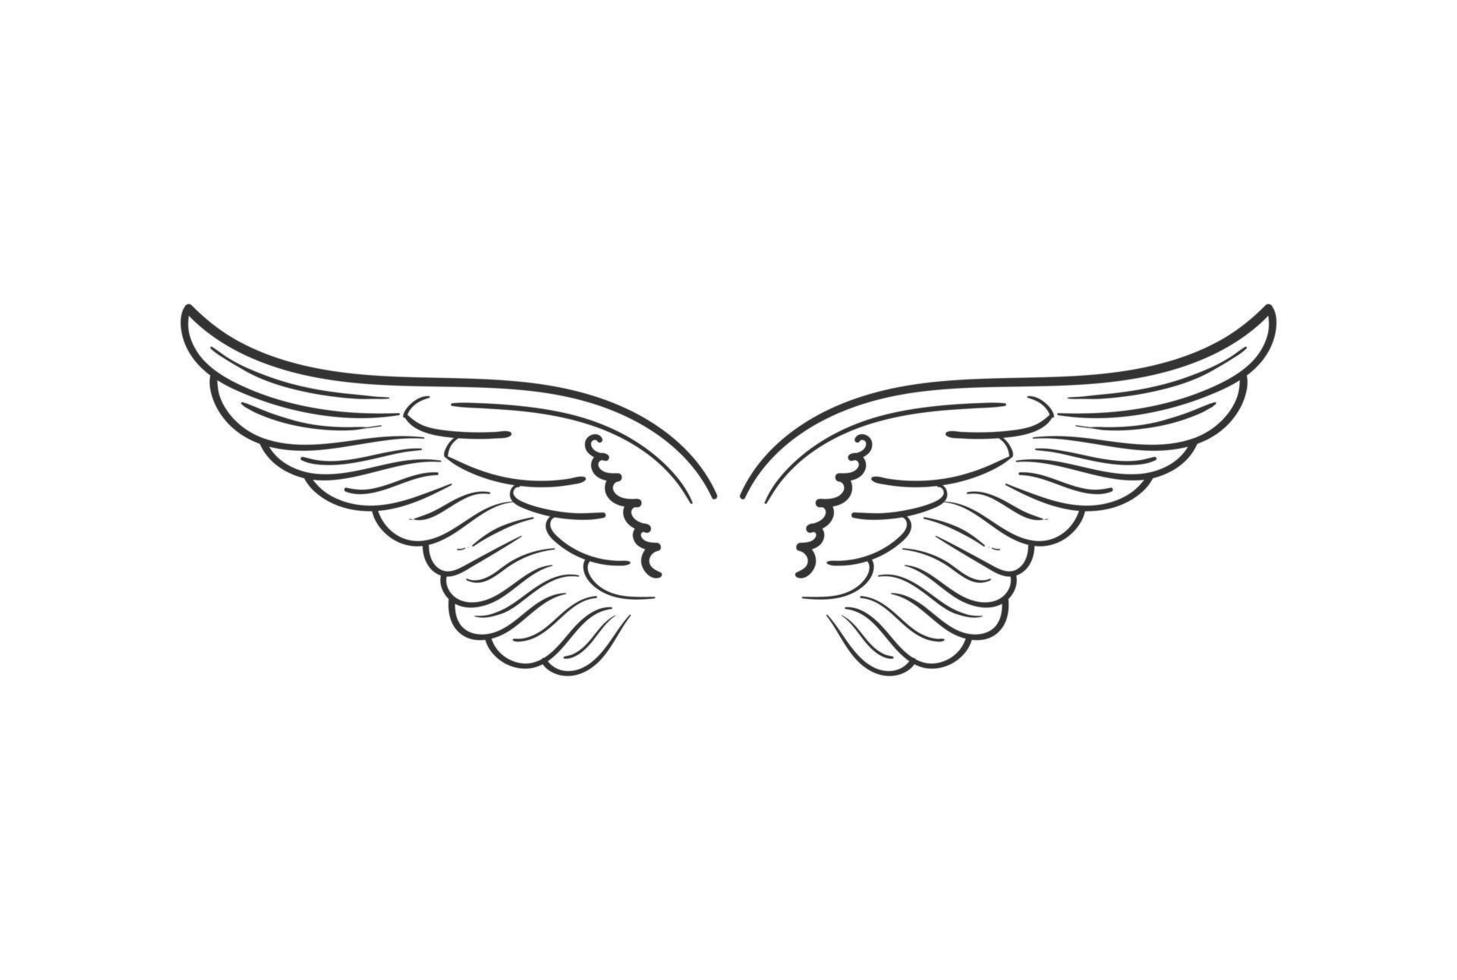 anjo espalhado vintage ou águia falcão falcão pomba pombo pássaro asas ilustração vetor de design de logotipo